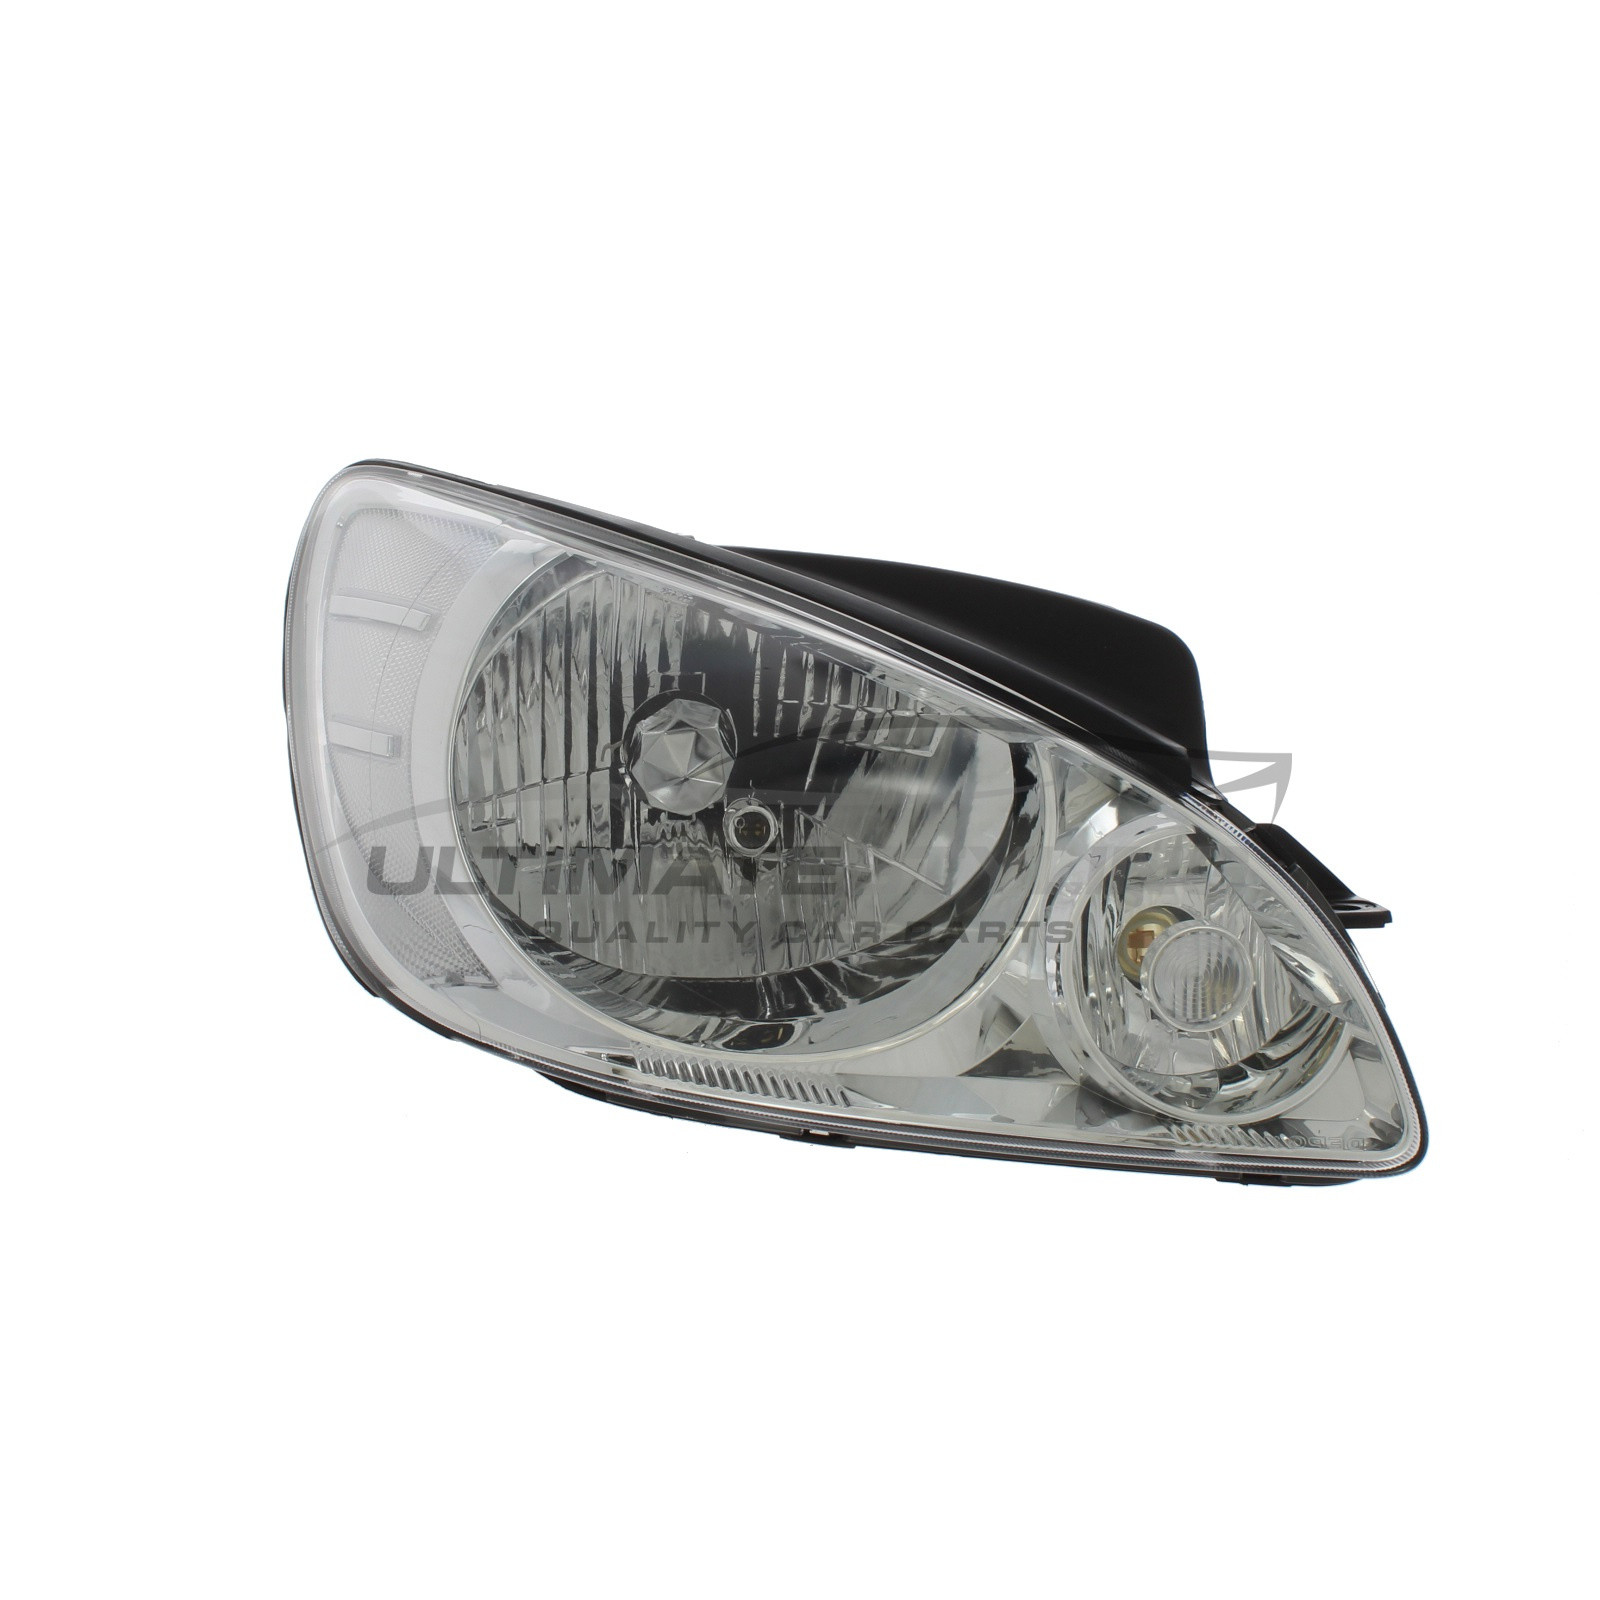 Headlight / Headlamp for Hyundai Getz